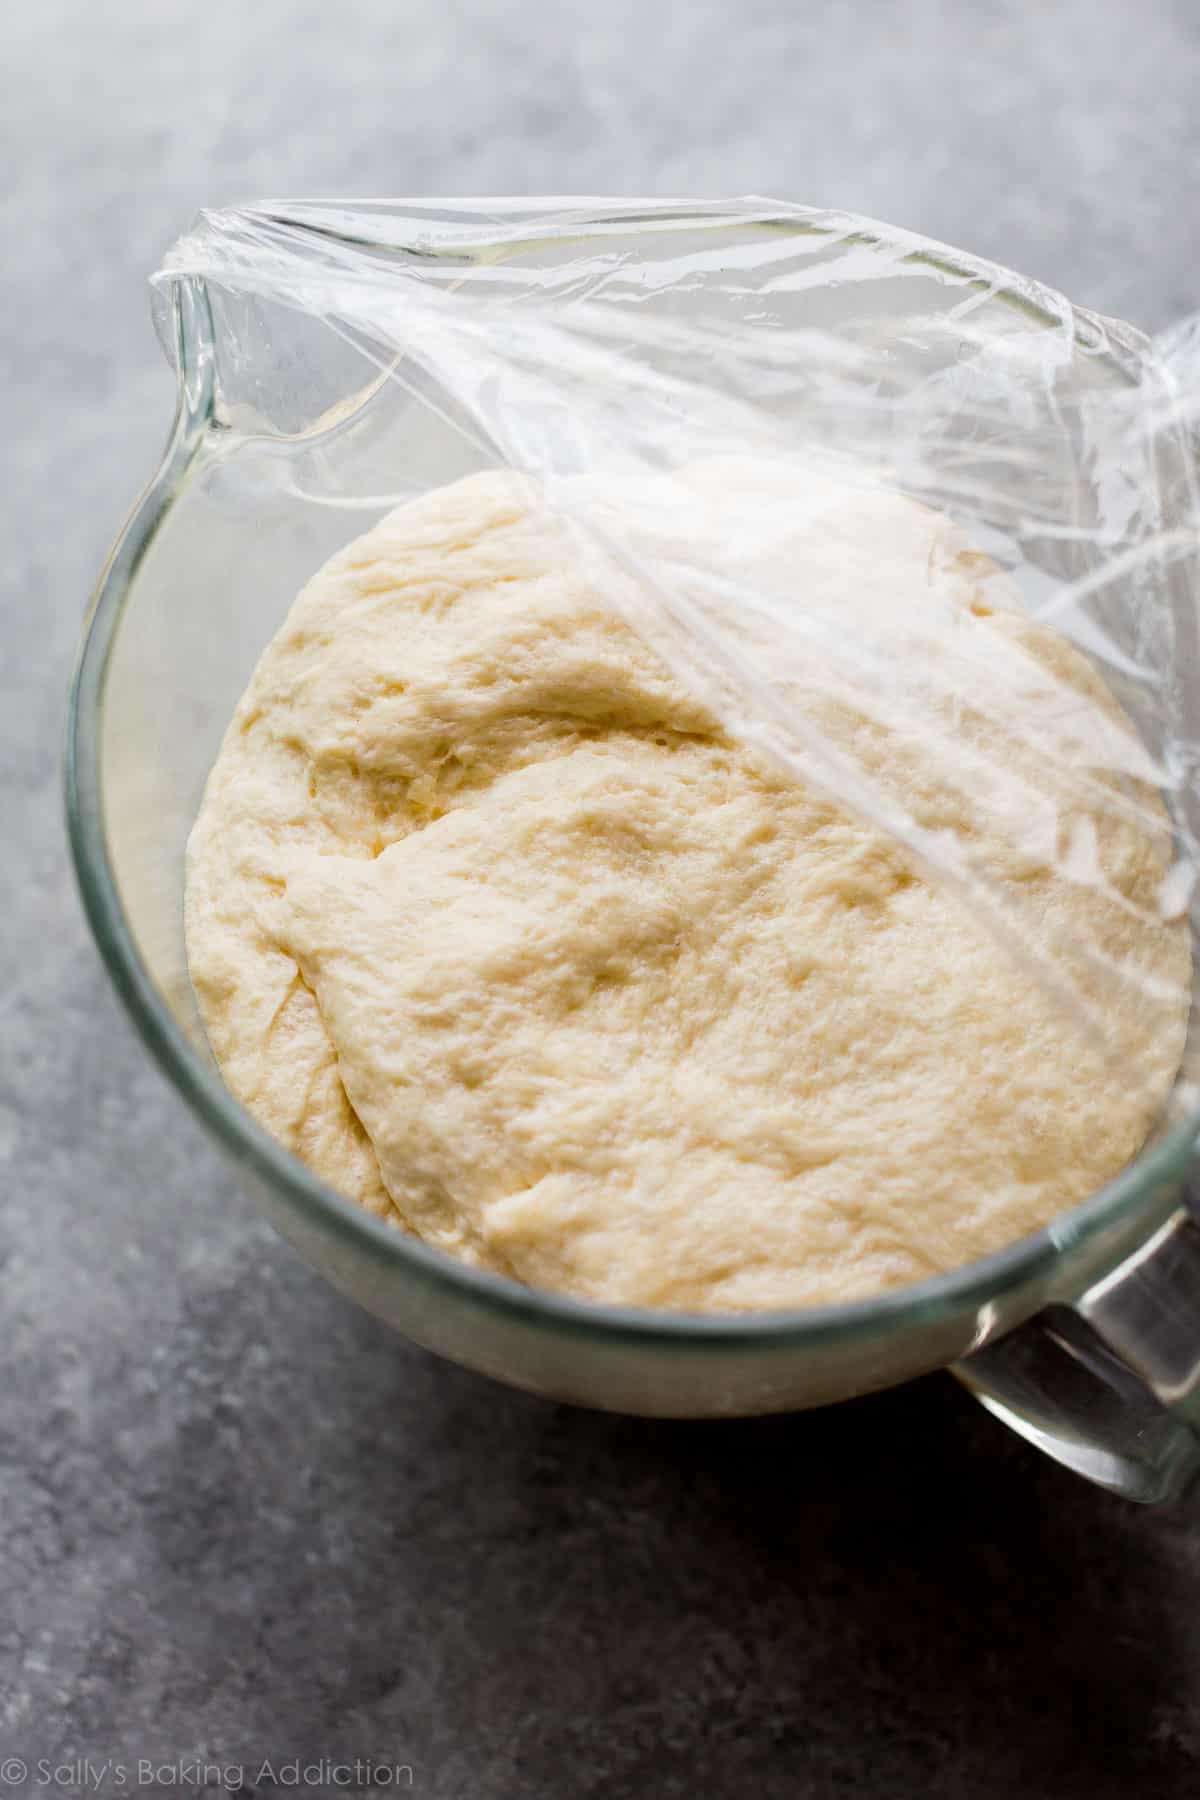 cinnamon swirl bread dough in a glass bowl